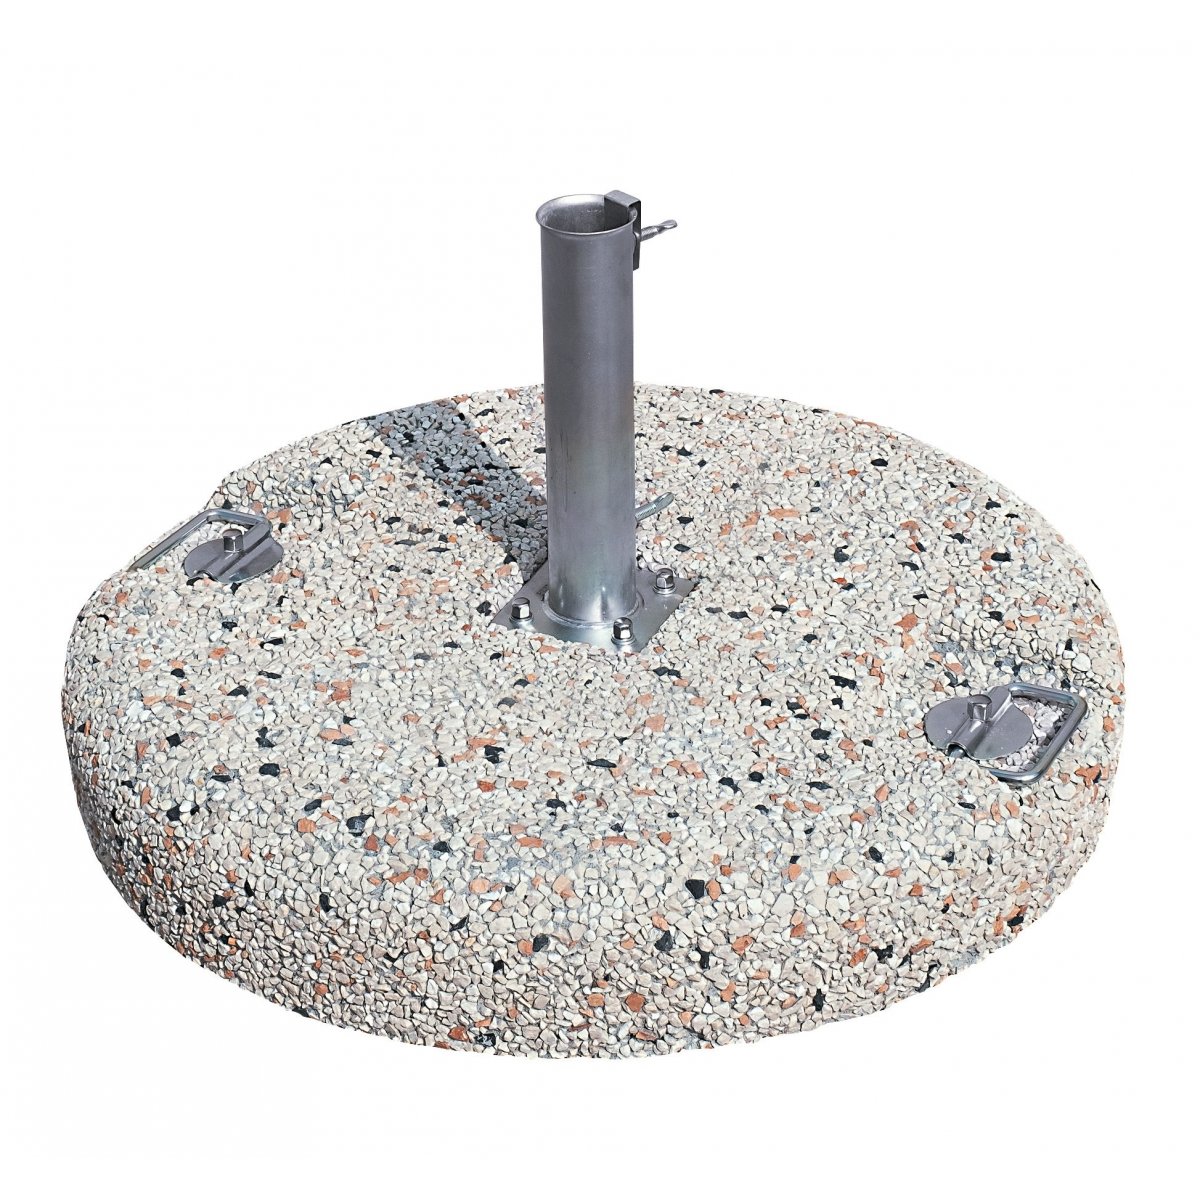 base in cemento e graniglia con tubo codice BC35MA4 - BC55MA4 - BC80MA4